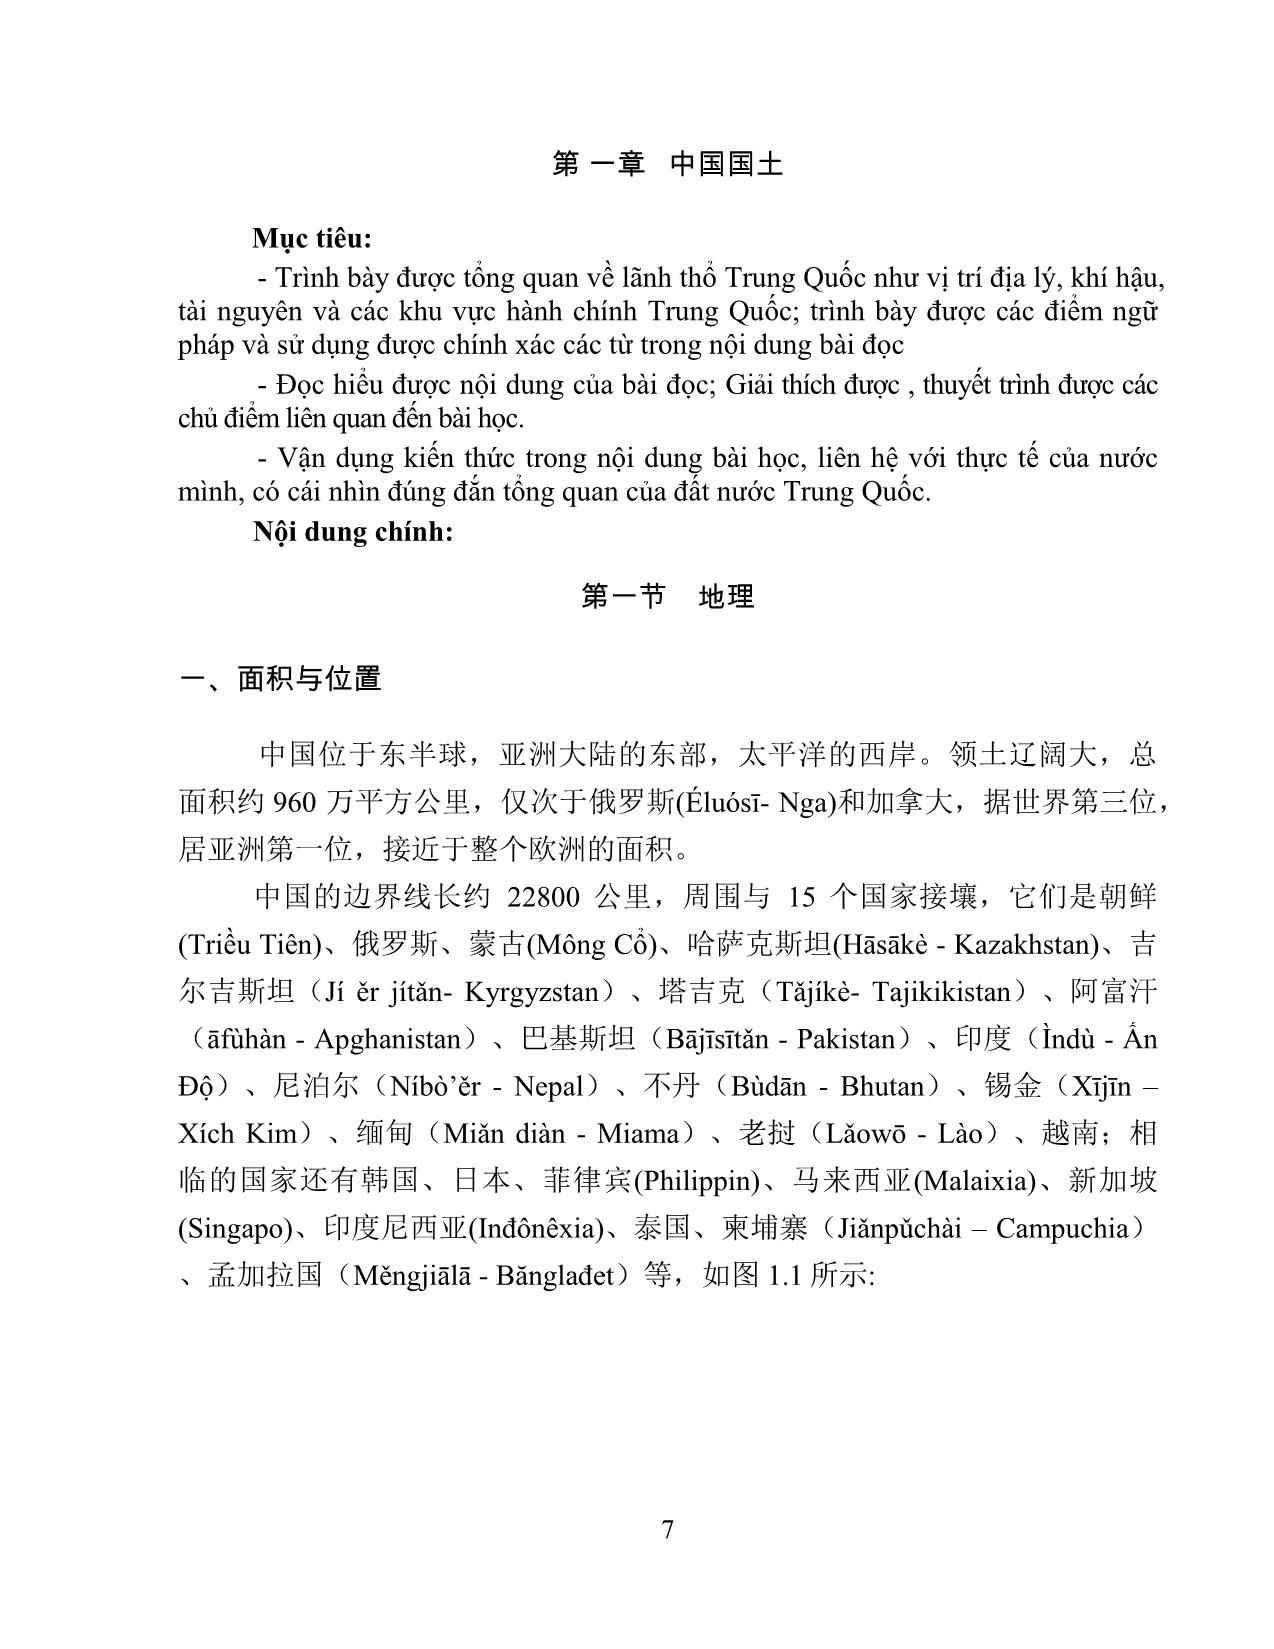 Giáo trình Đất nước học Trung Quốc trang 9